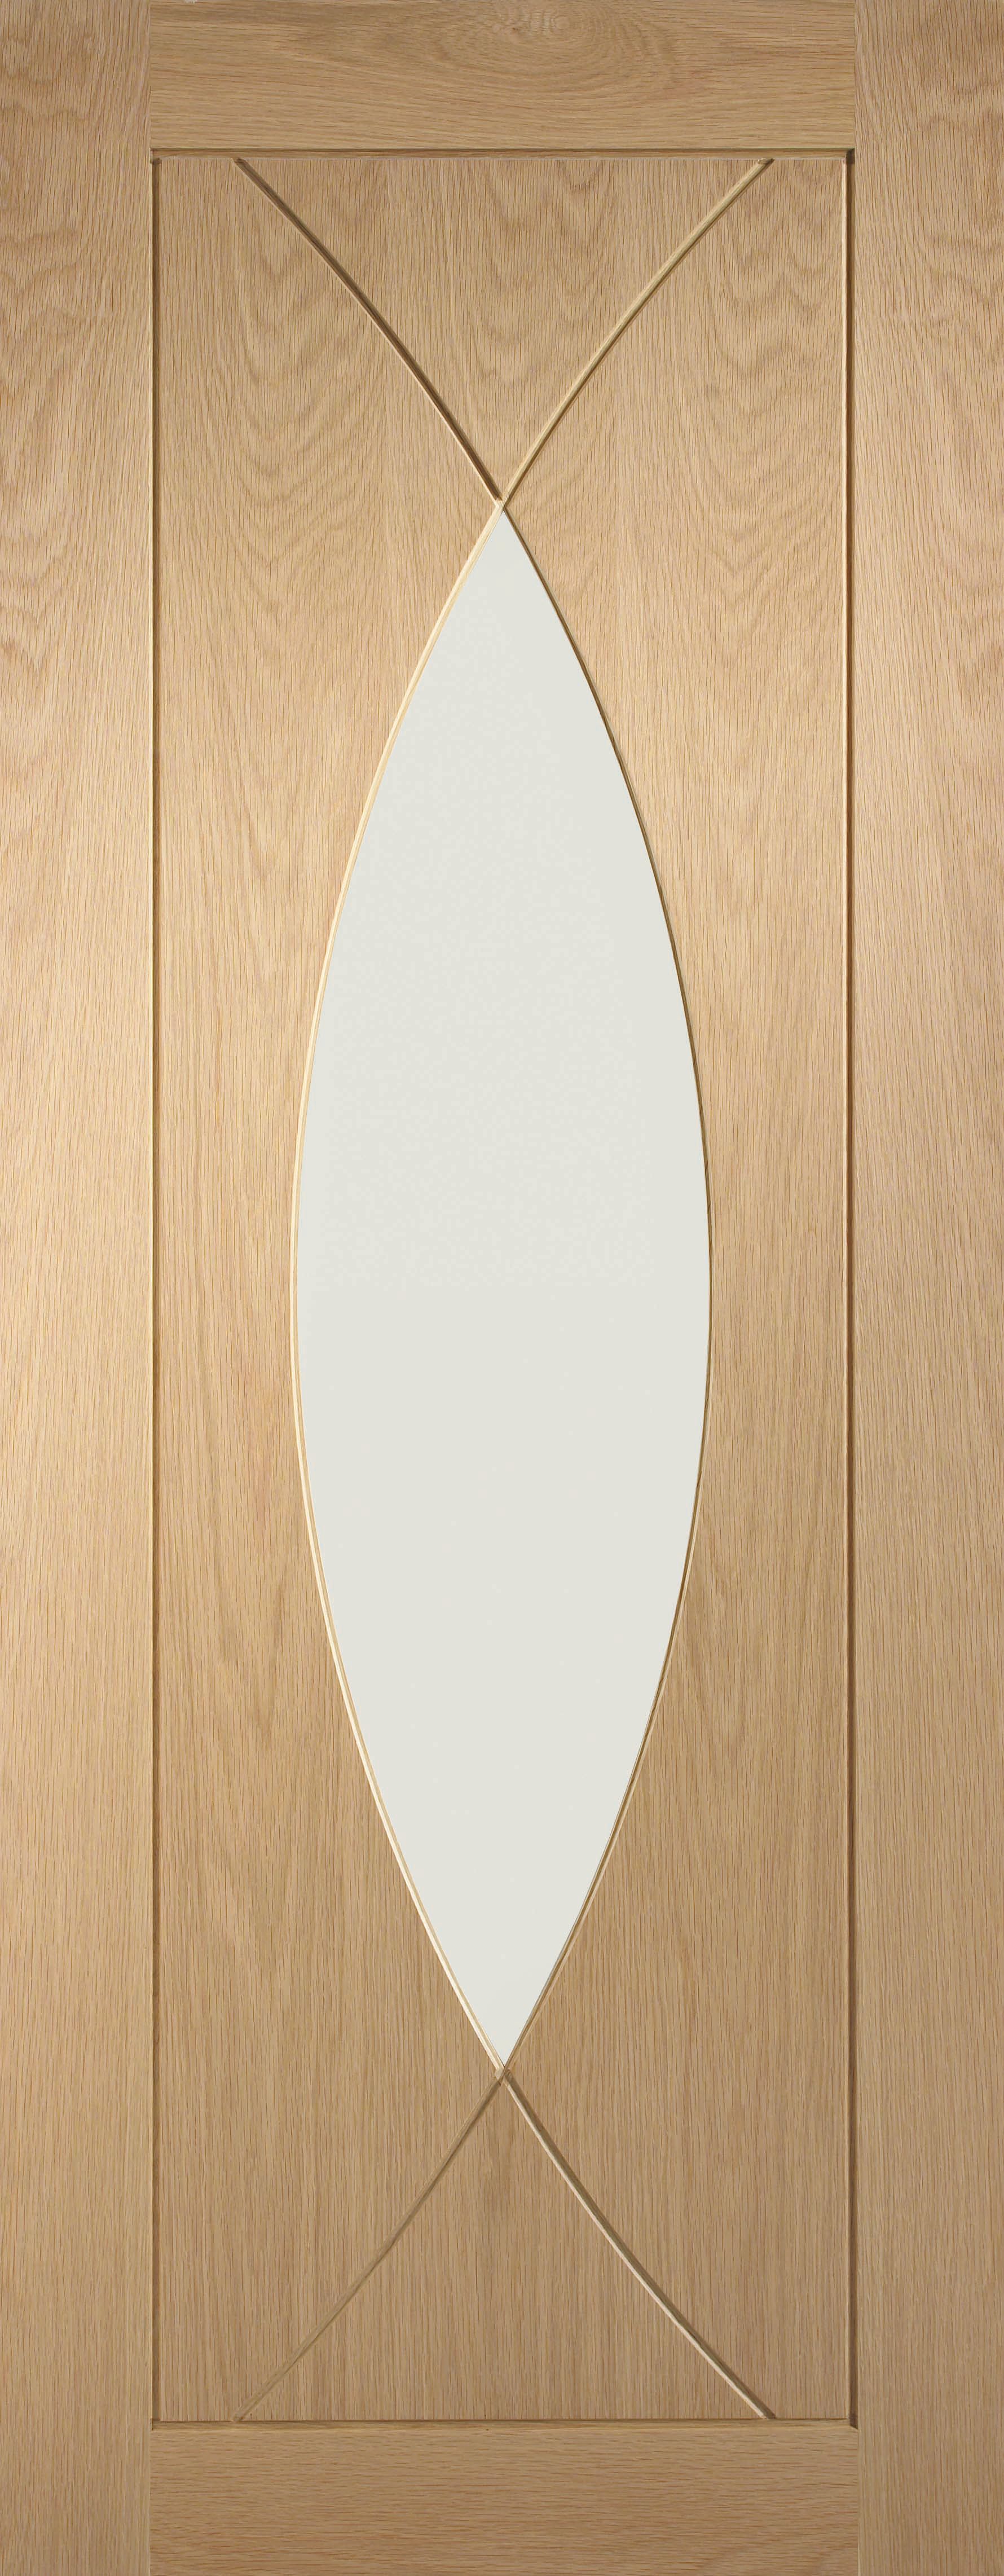 Image of XL Joinery Pesaro Glazed Oak Patterned Internal Door - 1981 x 686mm